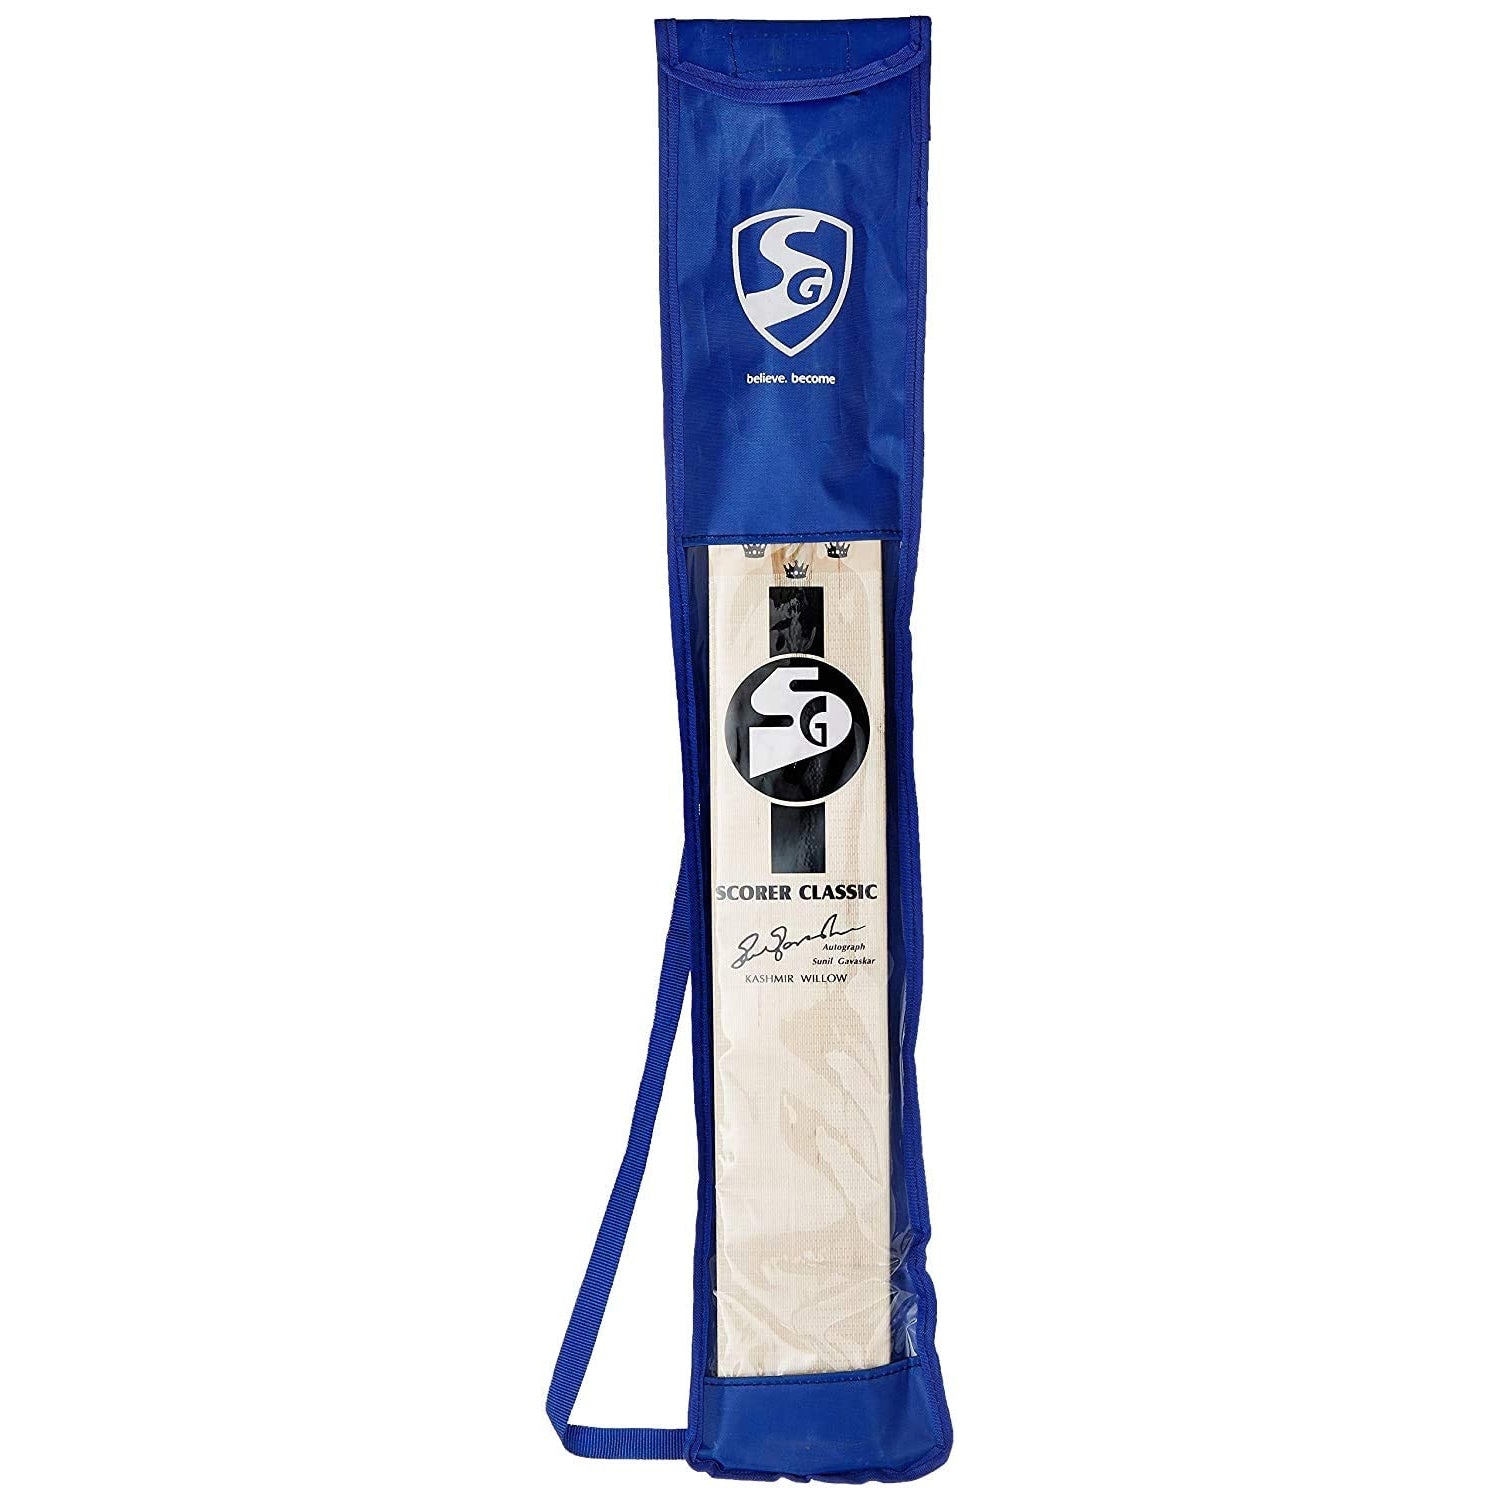 SG Scorer Classic Kashmir Willow Cricket Bat - Best Price online Prokicksports.com